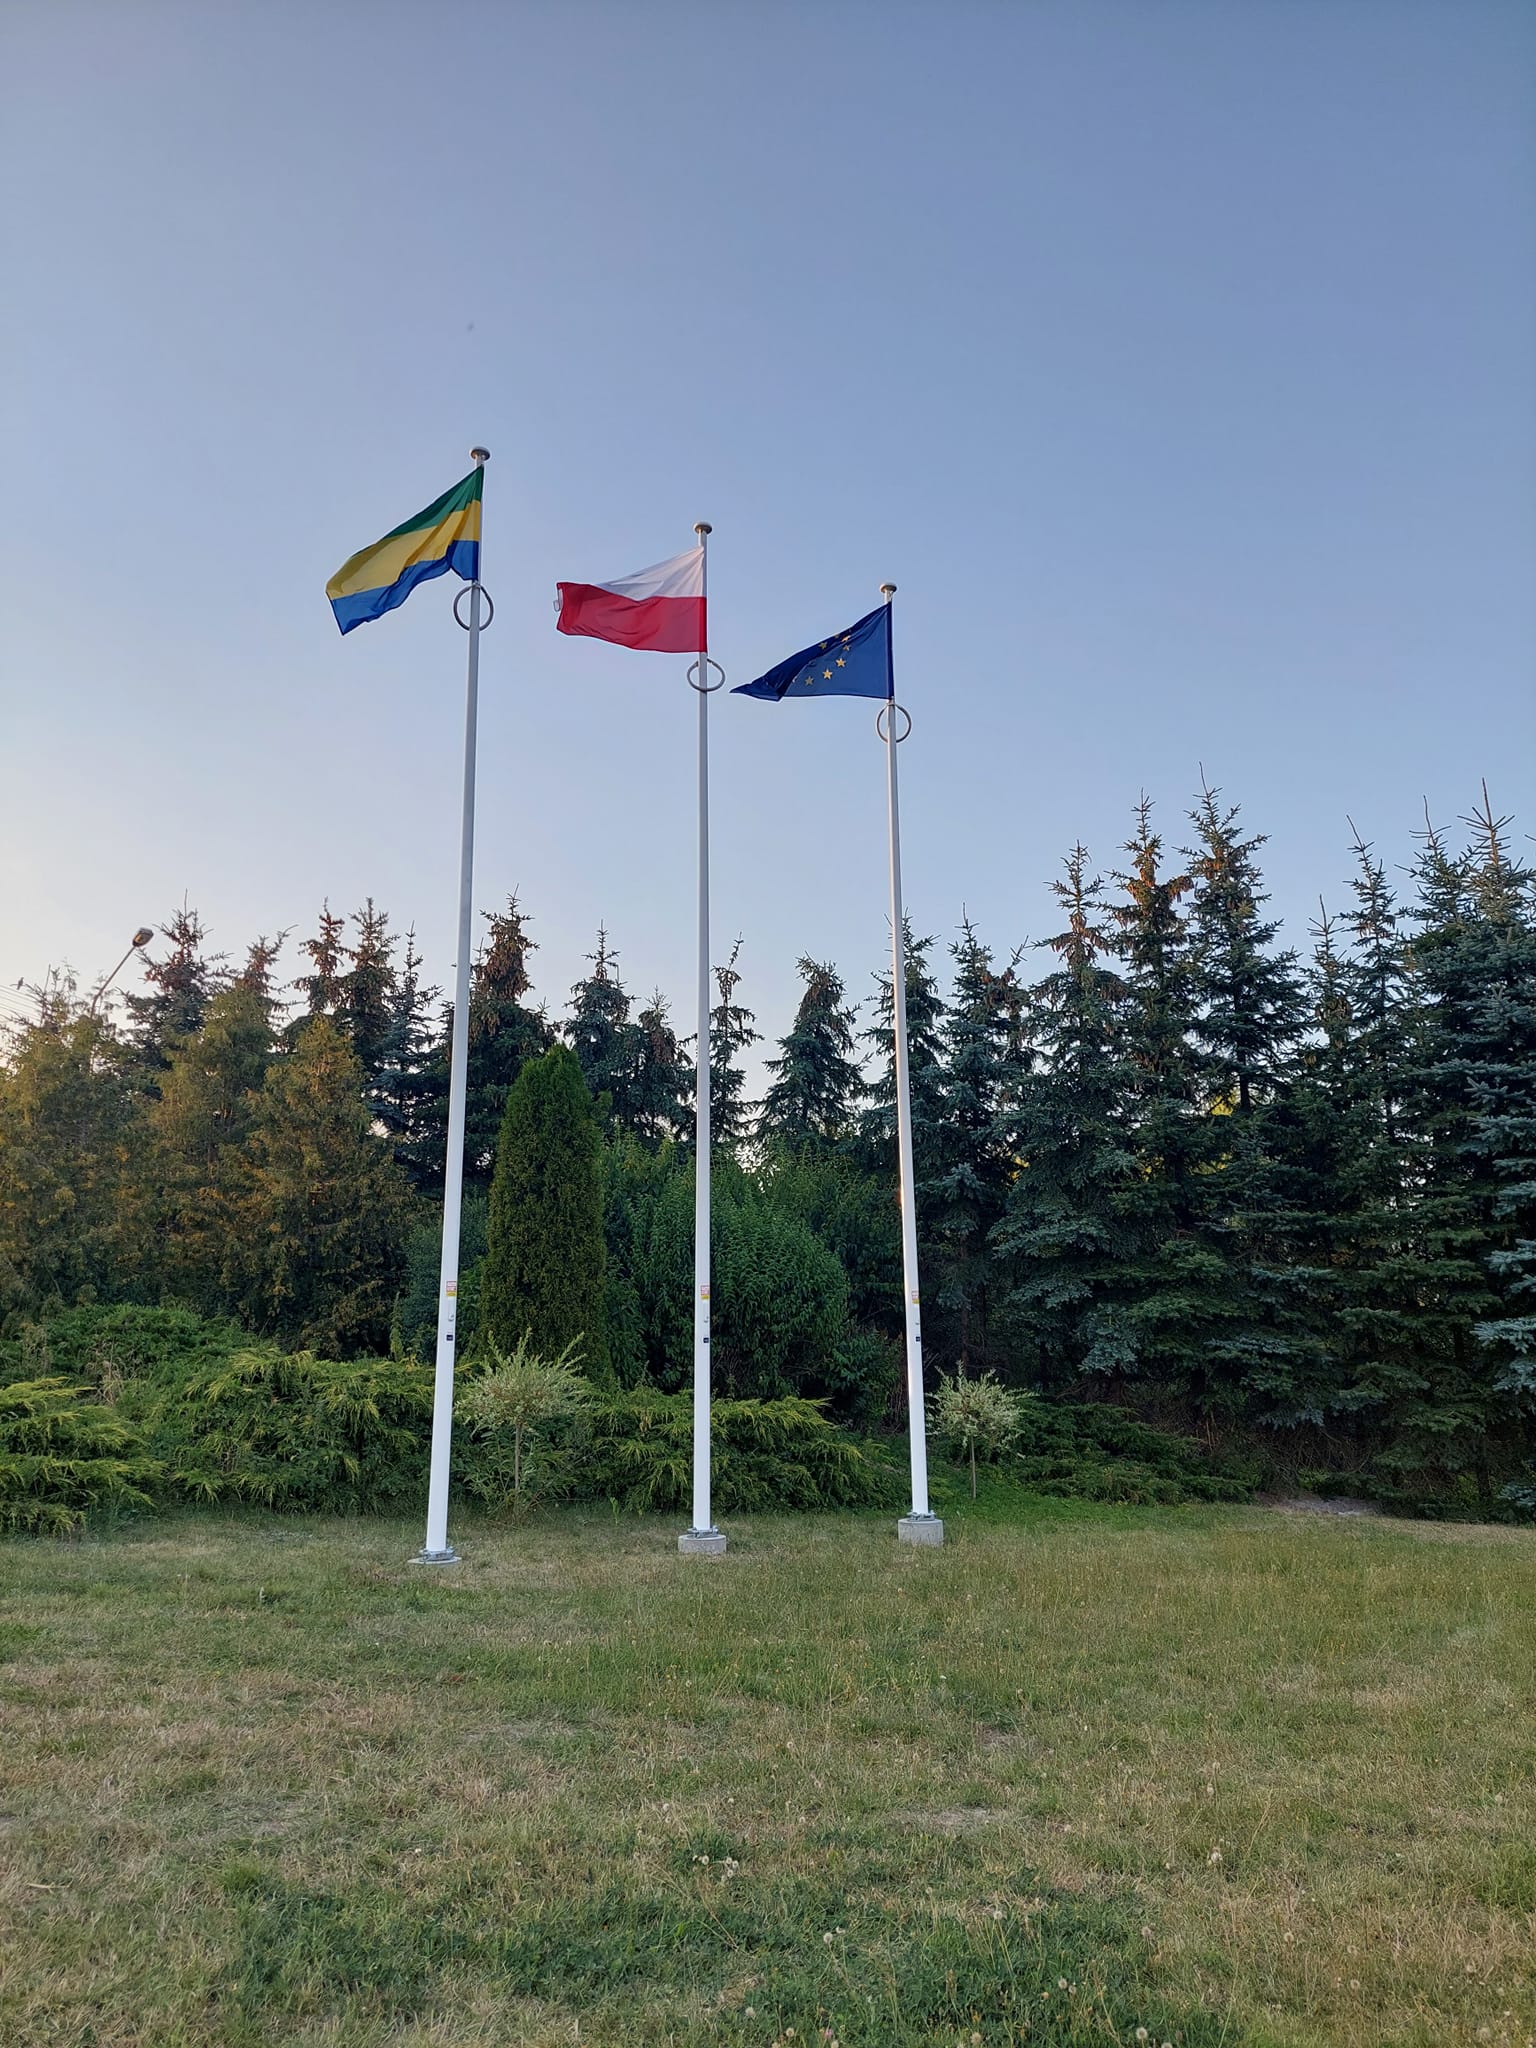 Trzy maszty z flagami: Państwową Rzeczypospolitej Polskiej, Unii Europejskiej oraz Gminy Chojnice